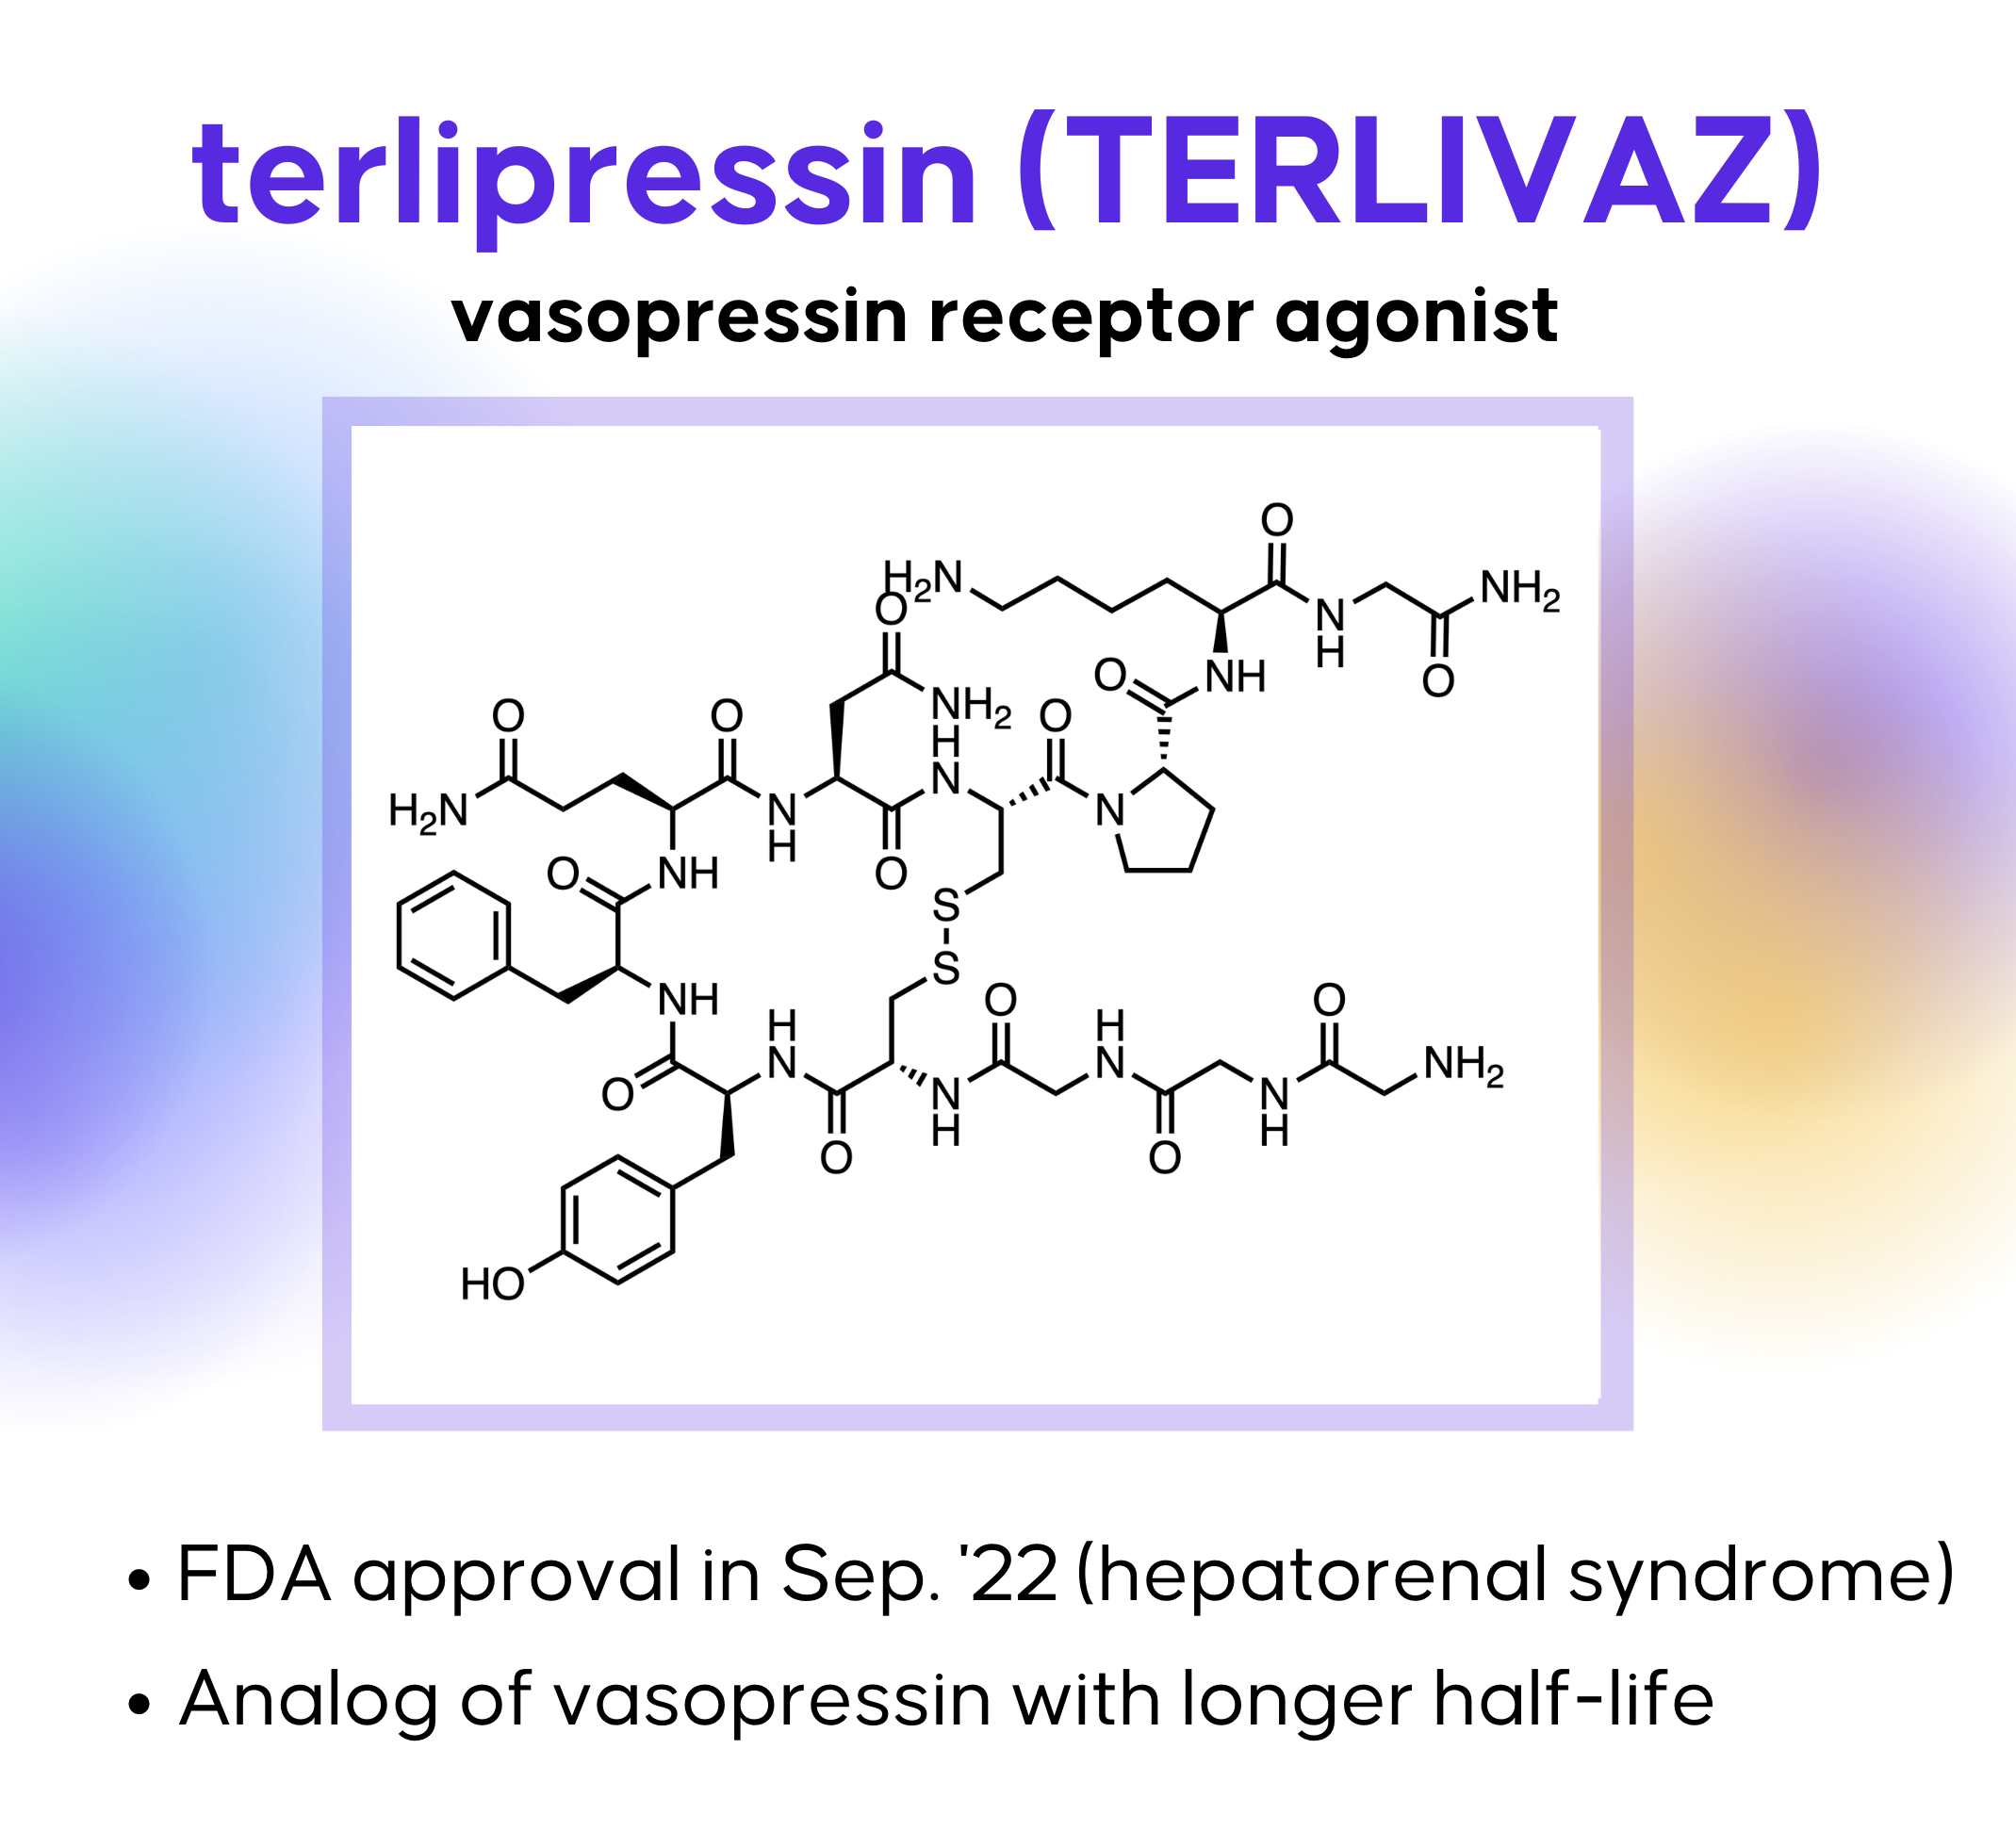 terlipressin chemical structure, terlivaz, vasopressin receptor agonist, FDA approved vasopressin receptor agonist